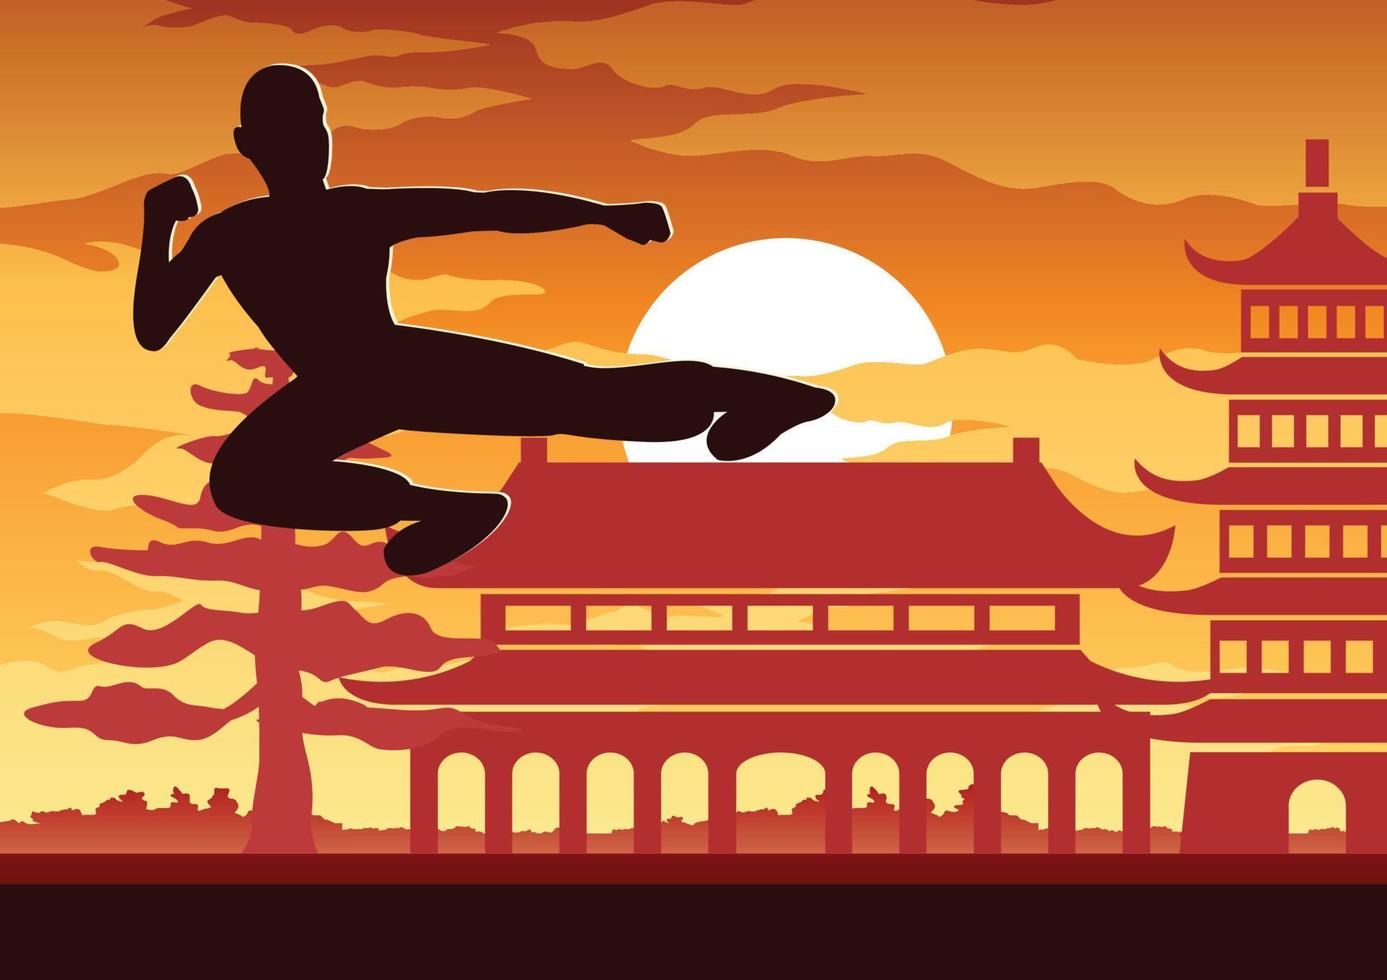 boxe chinês kung fu arte marcial esporte famoso, dois boxeadores lutam juntos com o templo chinês, design de silhueta do pôr do sol vetor